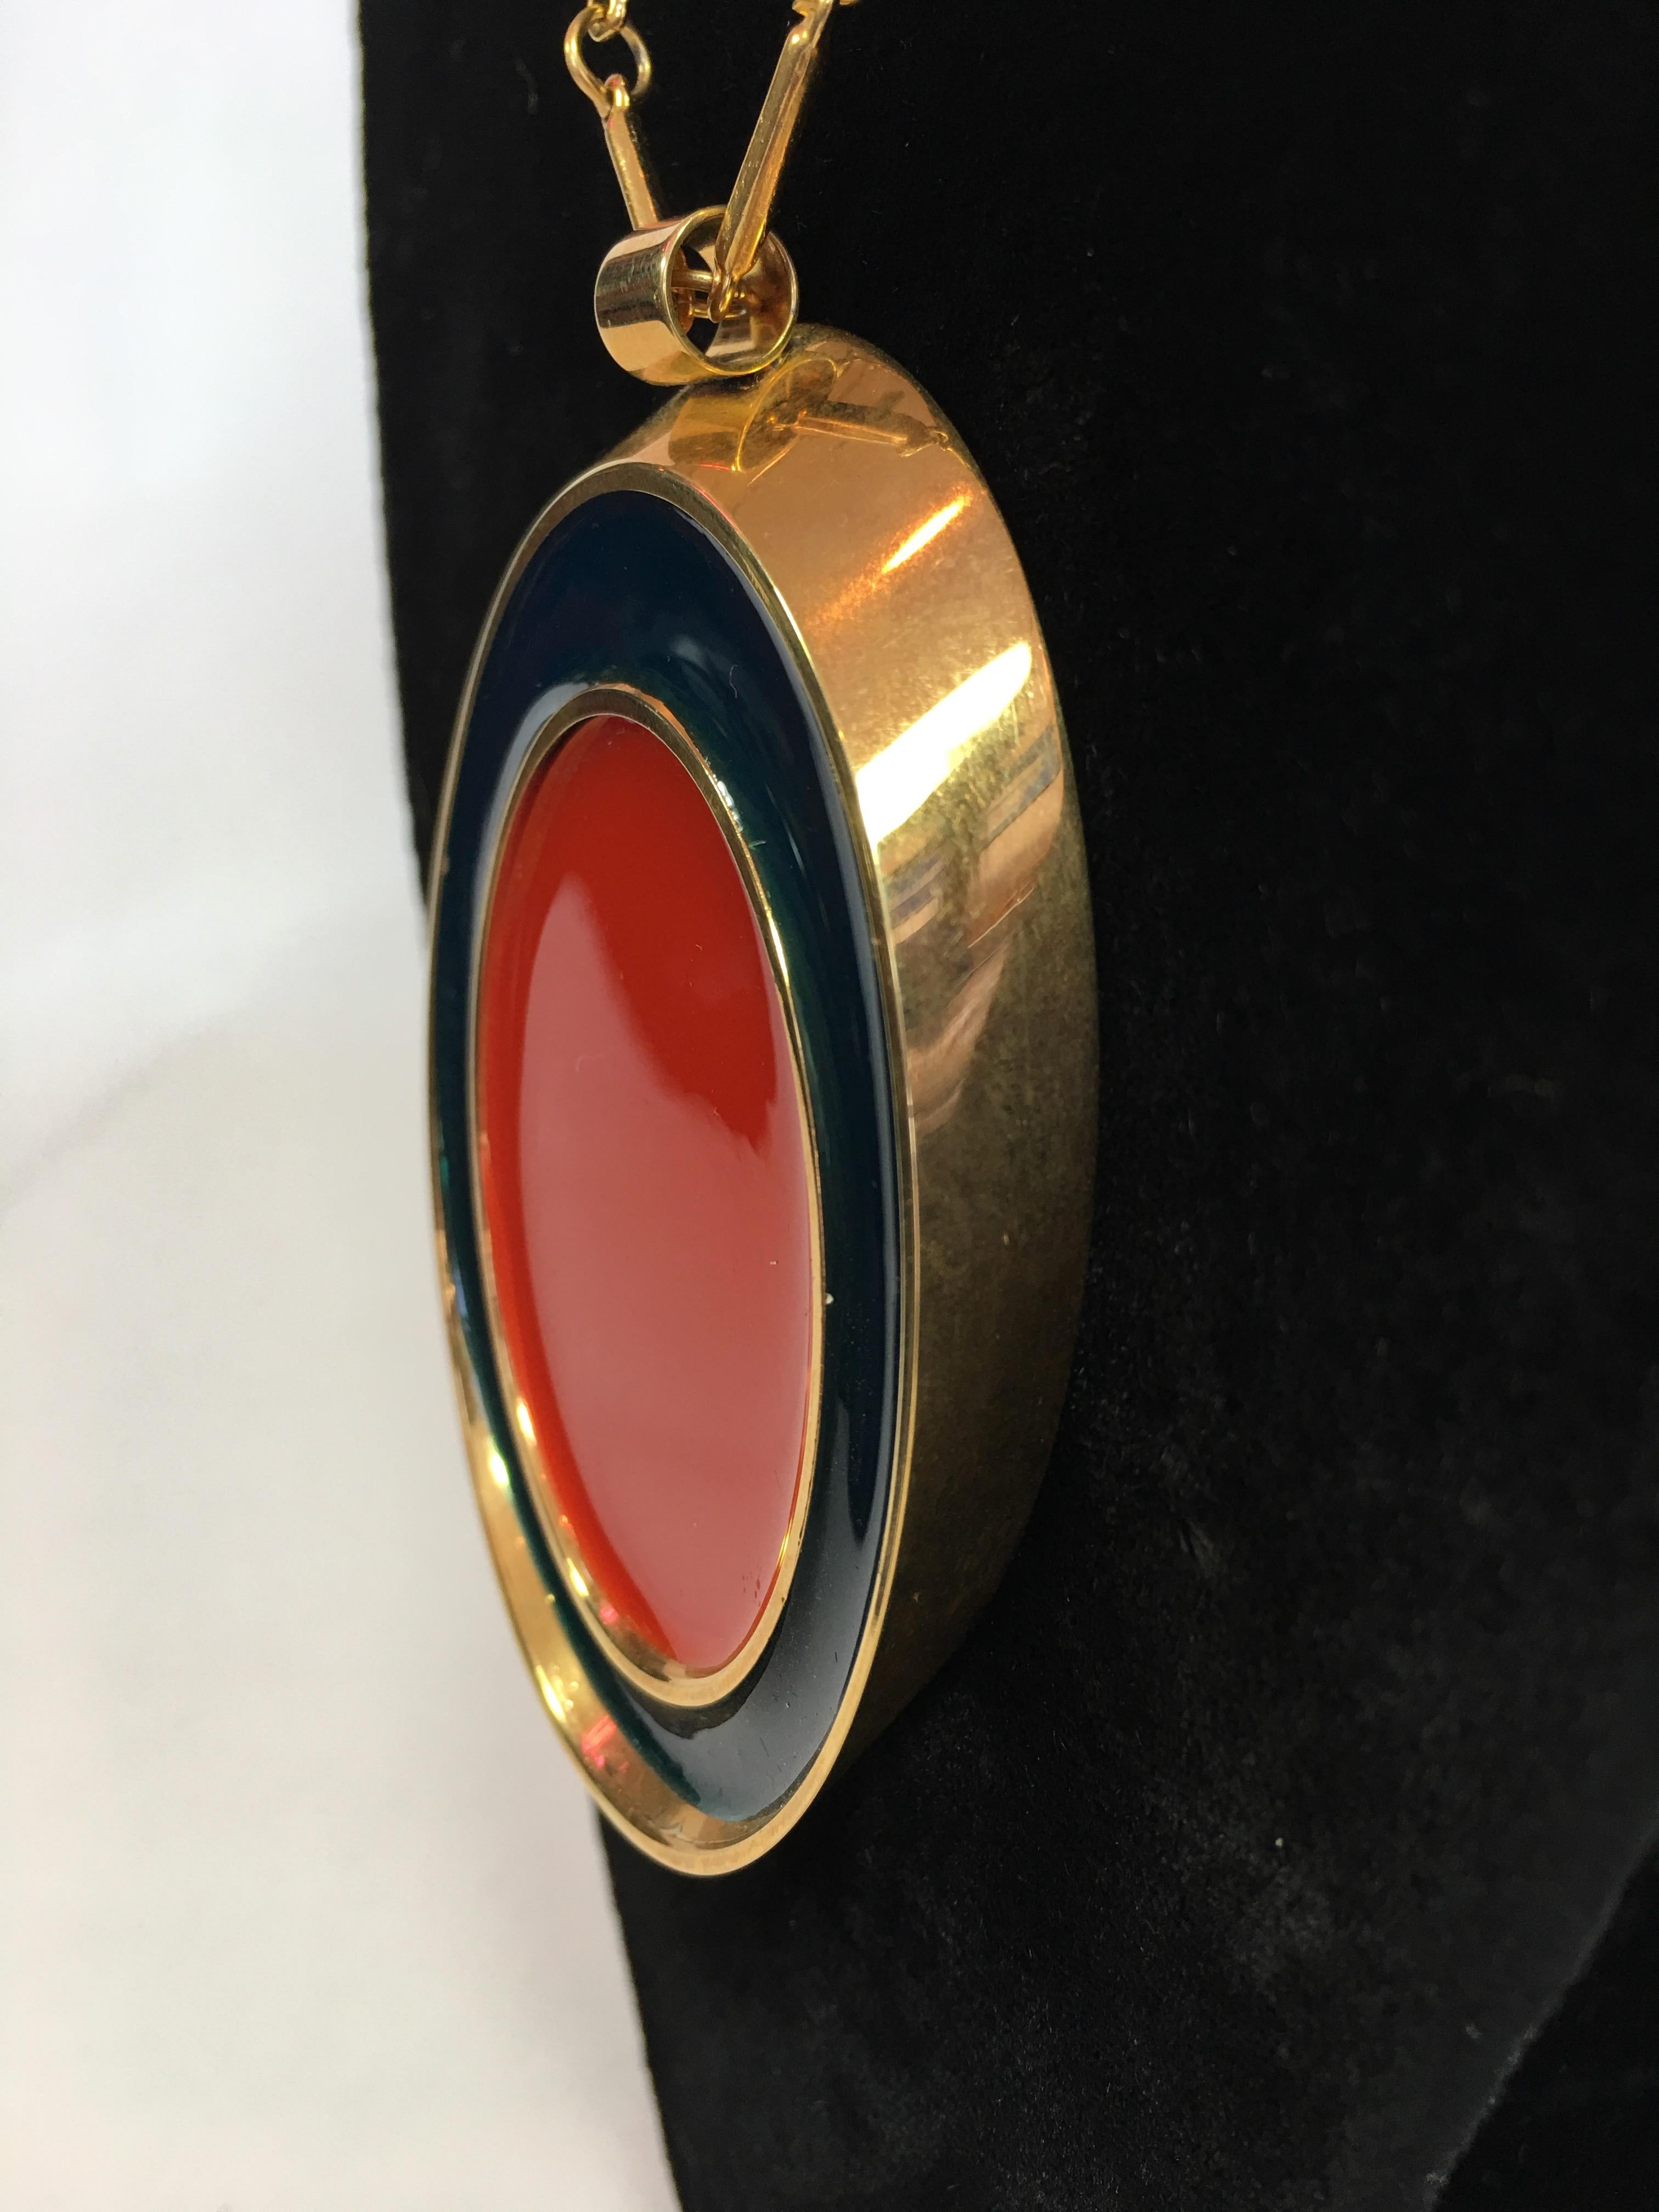 Guy Laroche Goldton-Halskette mit rotem und marineblauem, emailliertem, ovalem Anhänger aus den 1960er Jahren. Der Anhänger ist wendbar und hat auf beiden Seiten das gleiche marineblaue und rote Design. Die Kette ist ein Teil des Designmerkmals. Guy